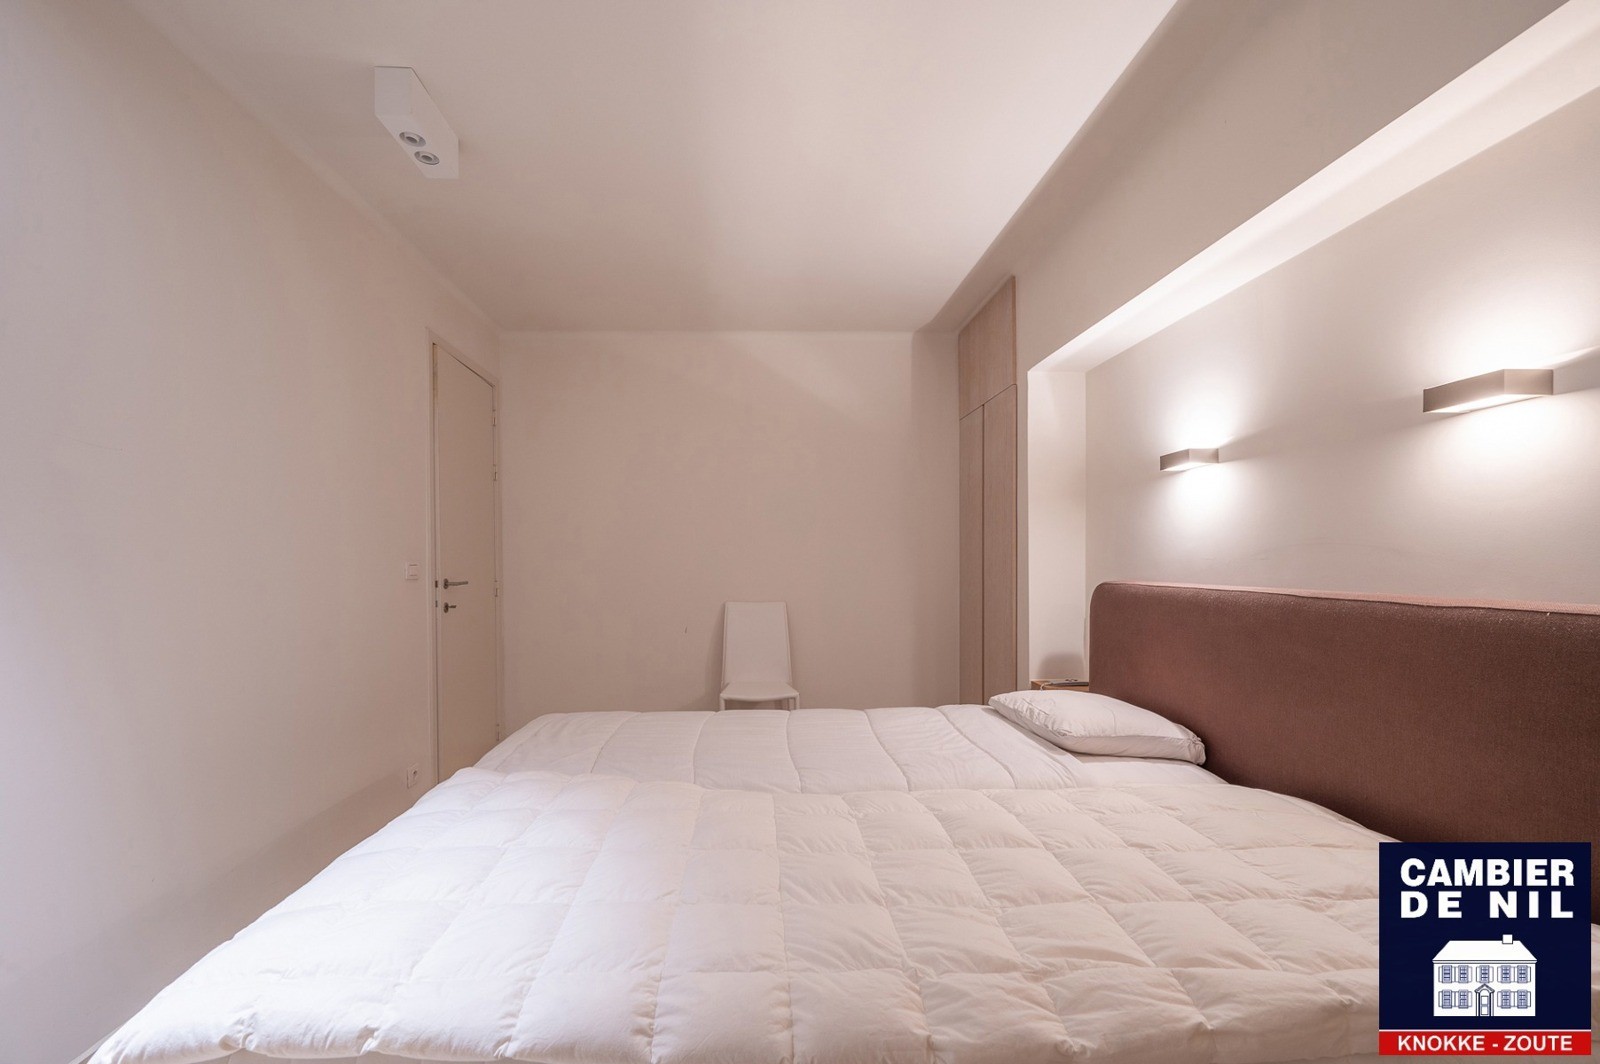 MEUBLÉ : Appartement spacieux avec vue mer et 4 chambres à coucher à Duinbergen ! 14